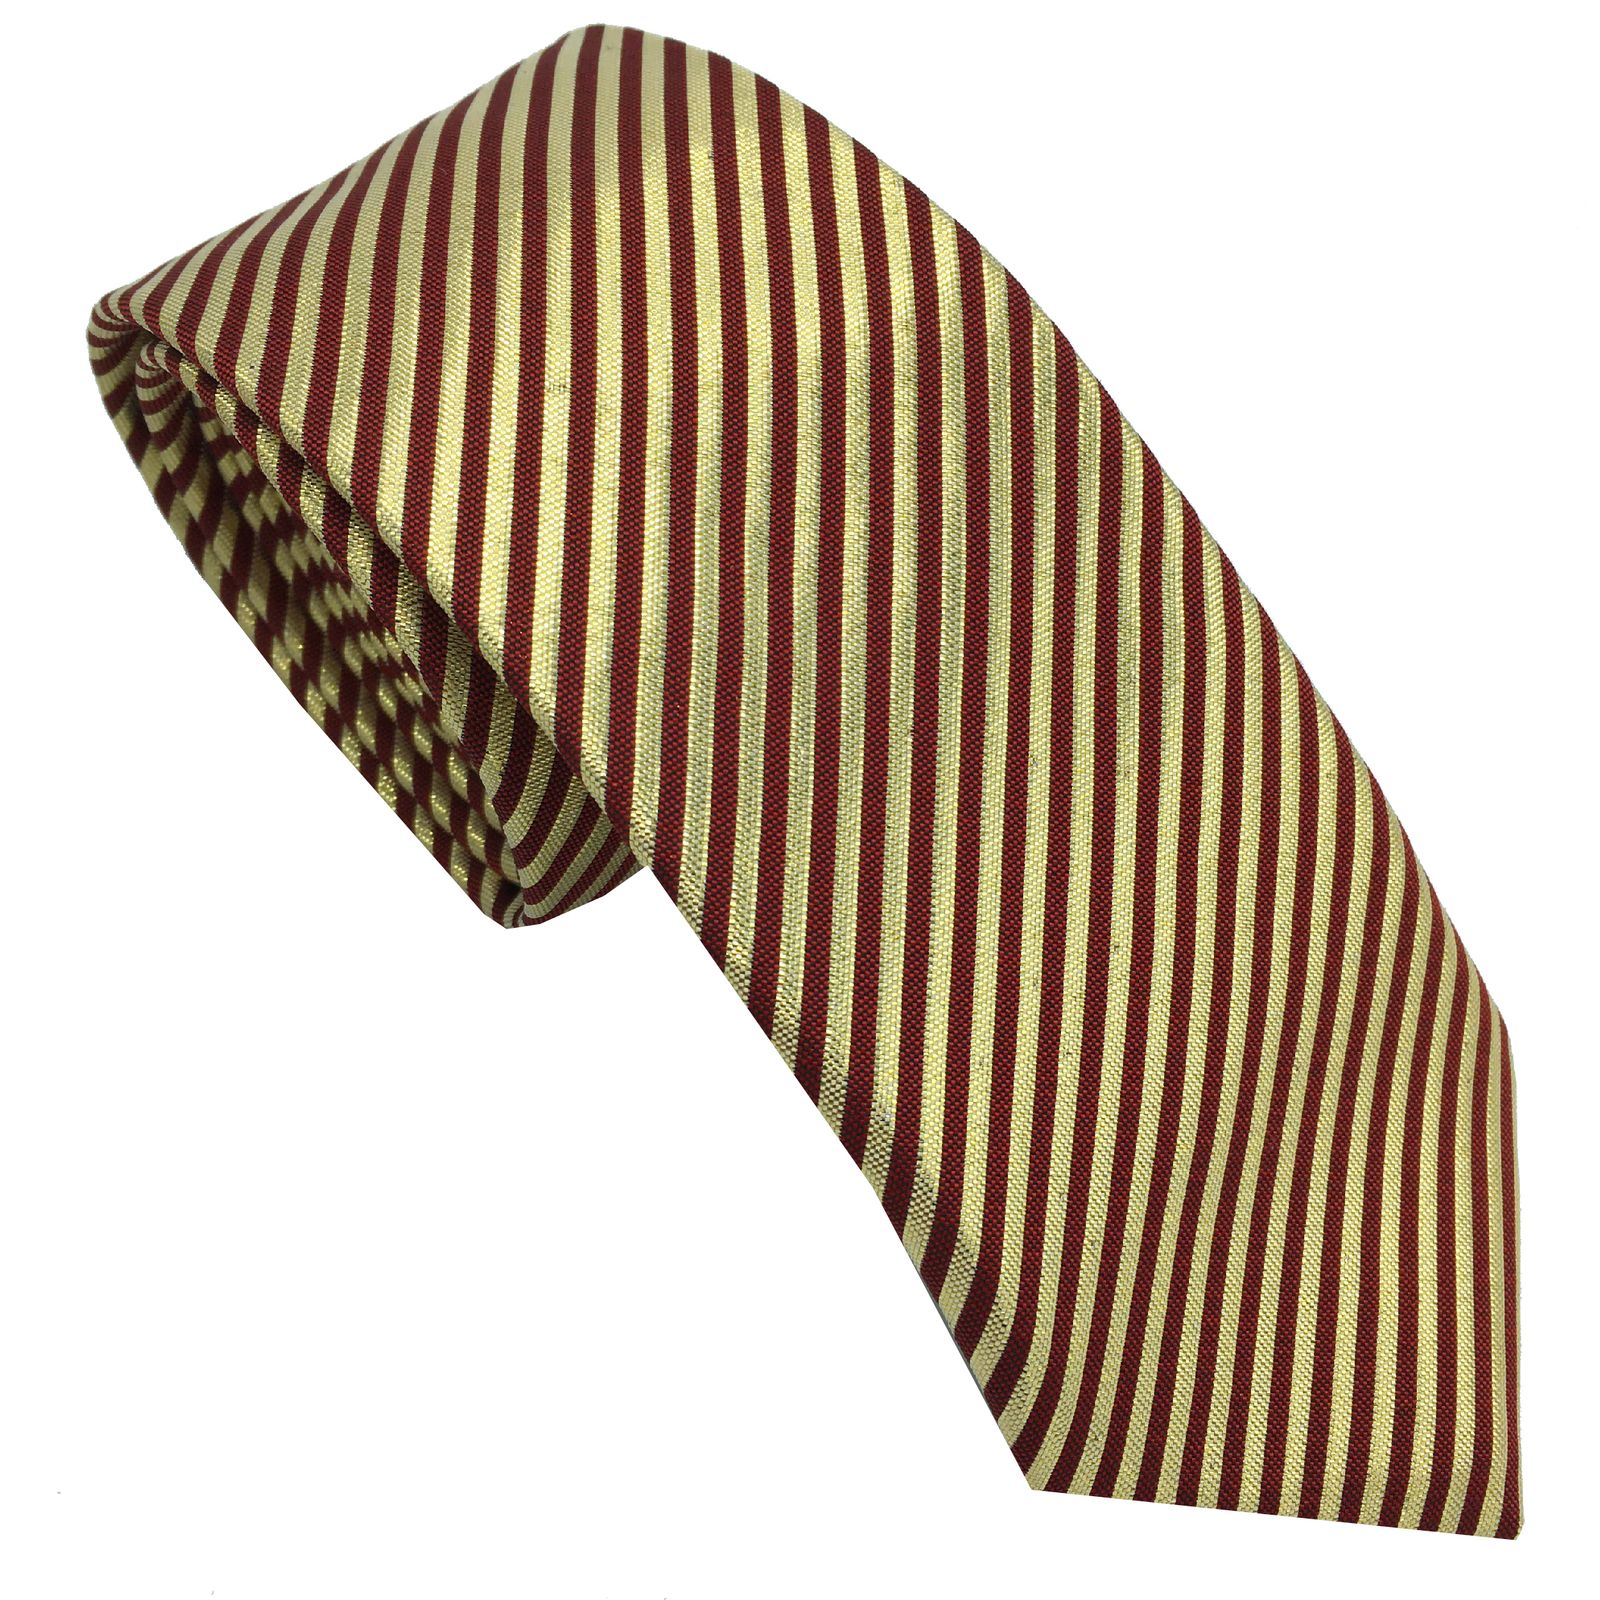  کراوات مردانه هکس ایران مدل KT-GD KJR3 -  - 1